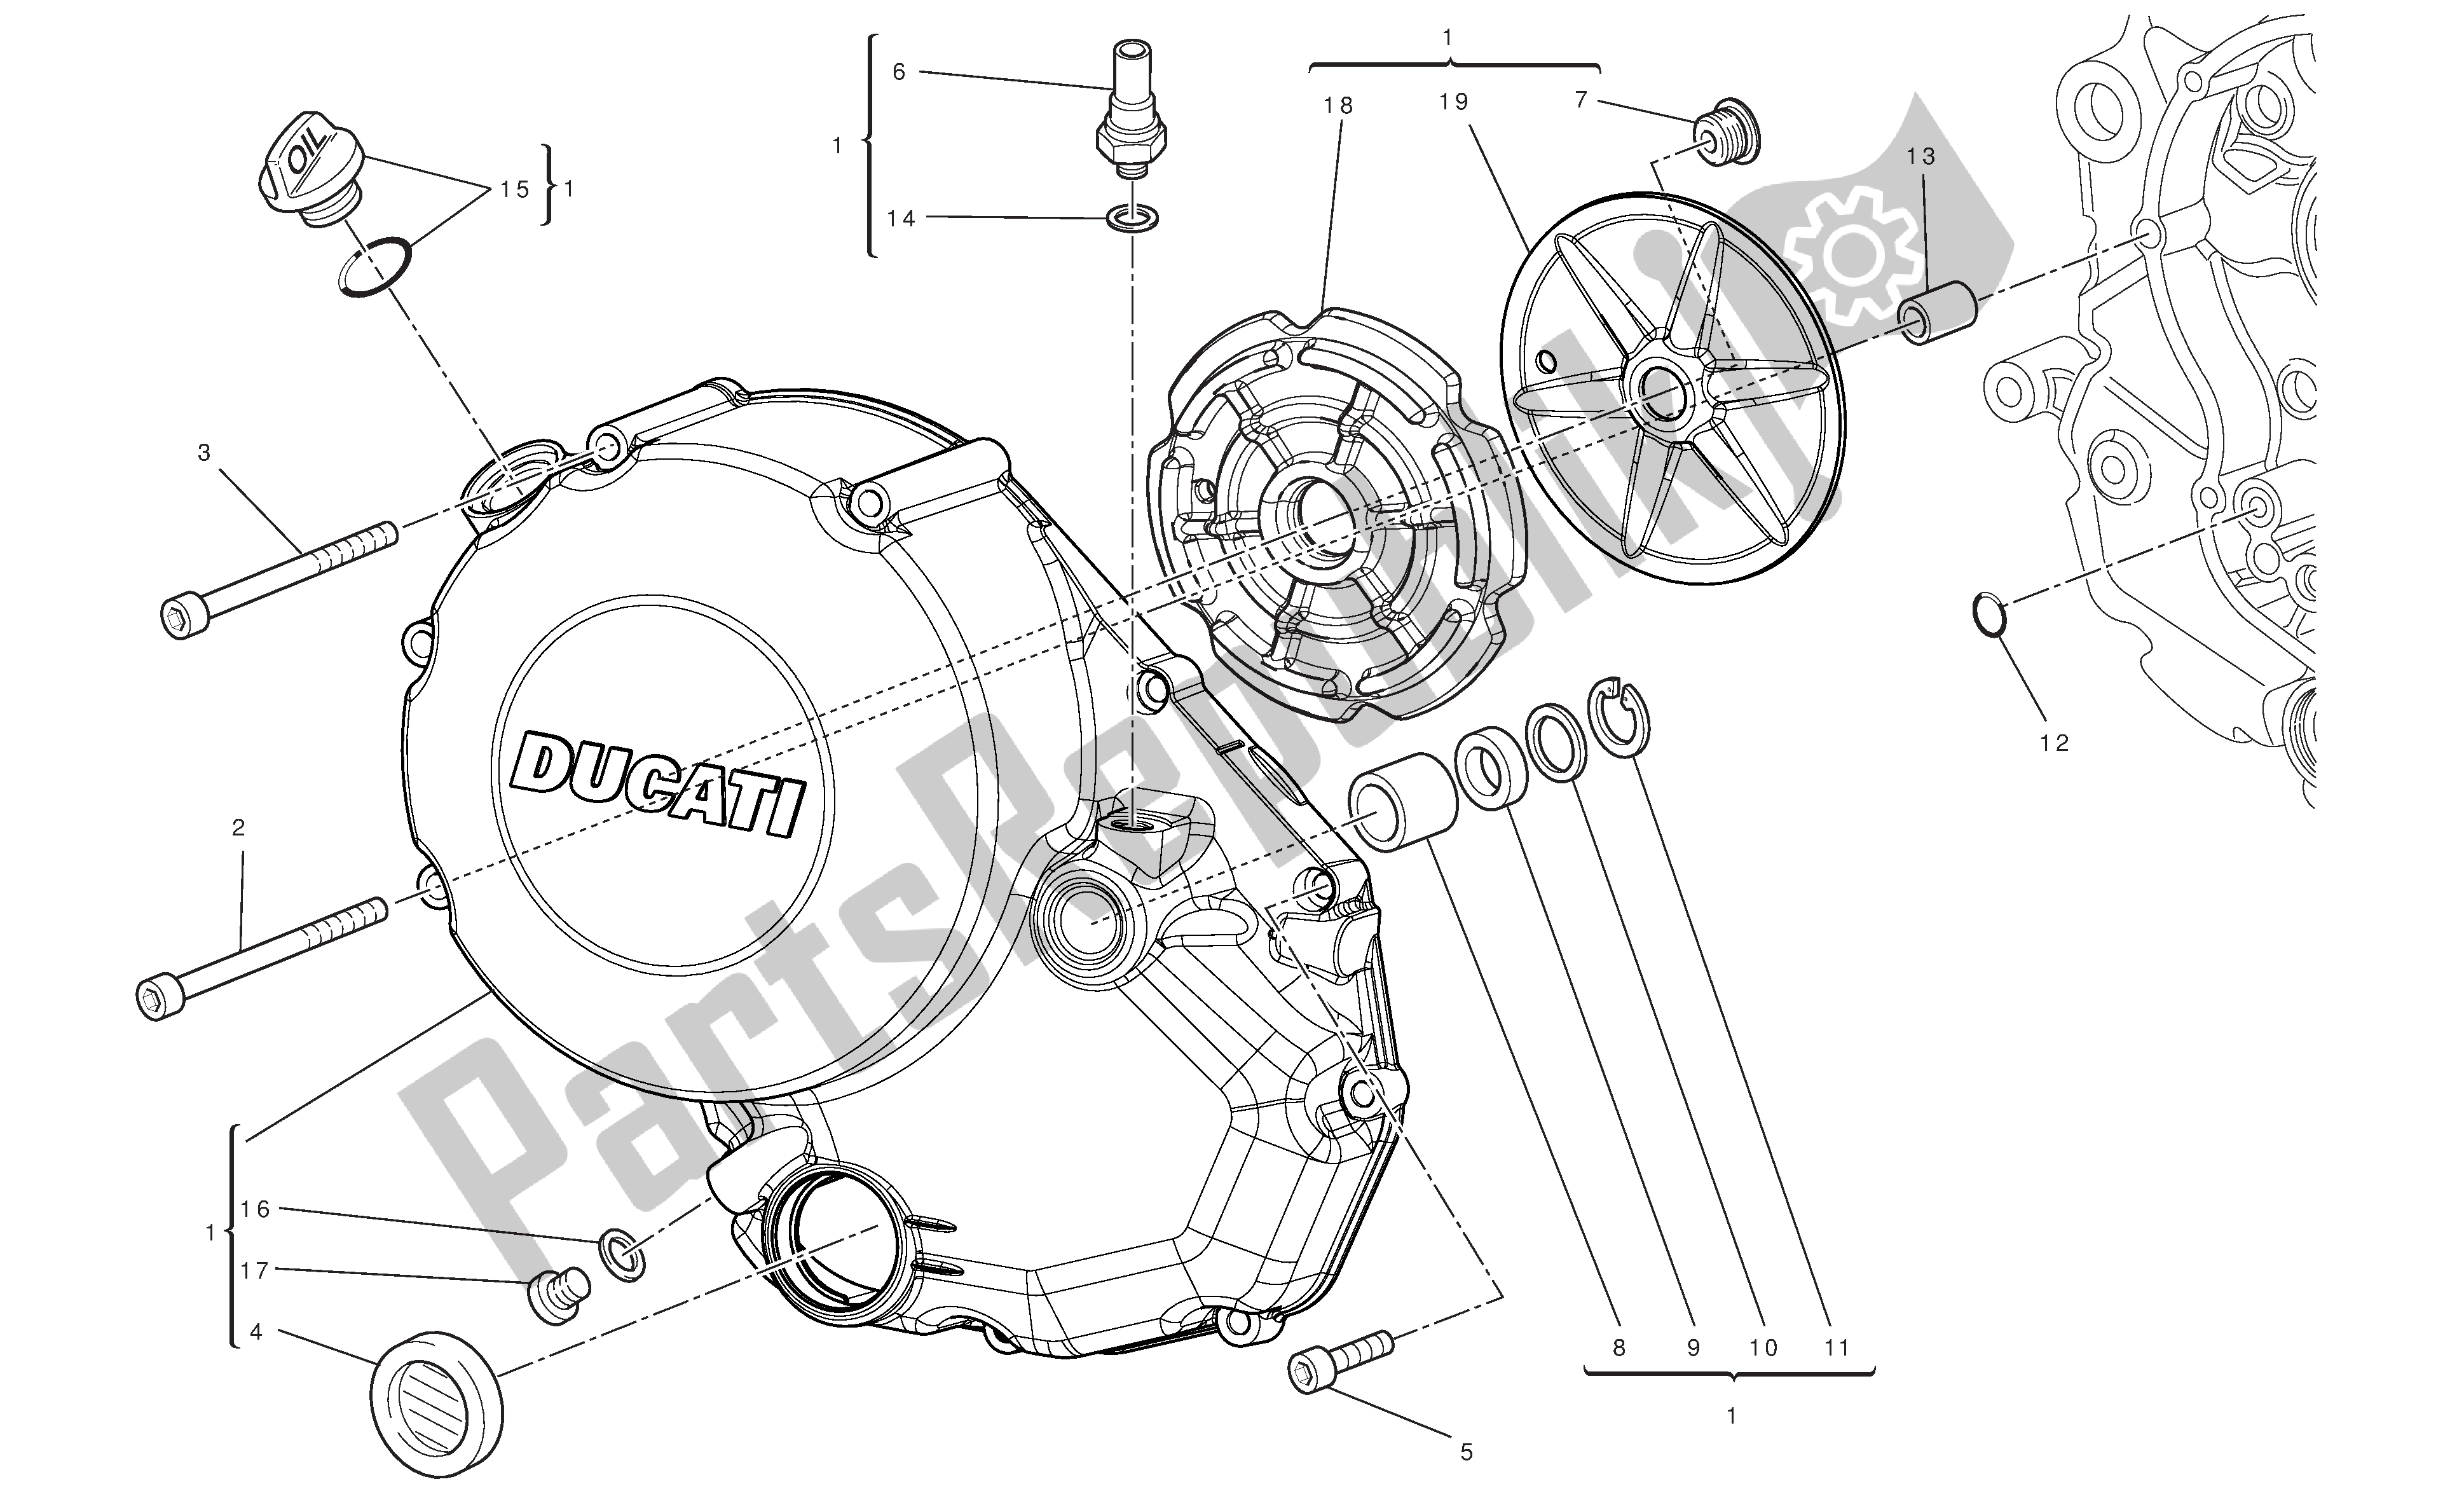 Tutte le parti per il Coperchio Frizione del Ducati Hypermotard 796 2010